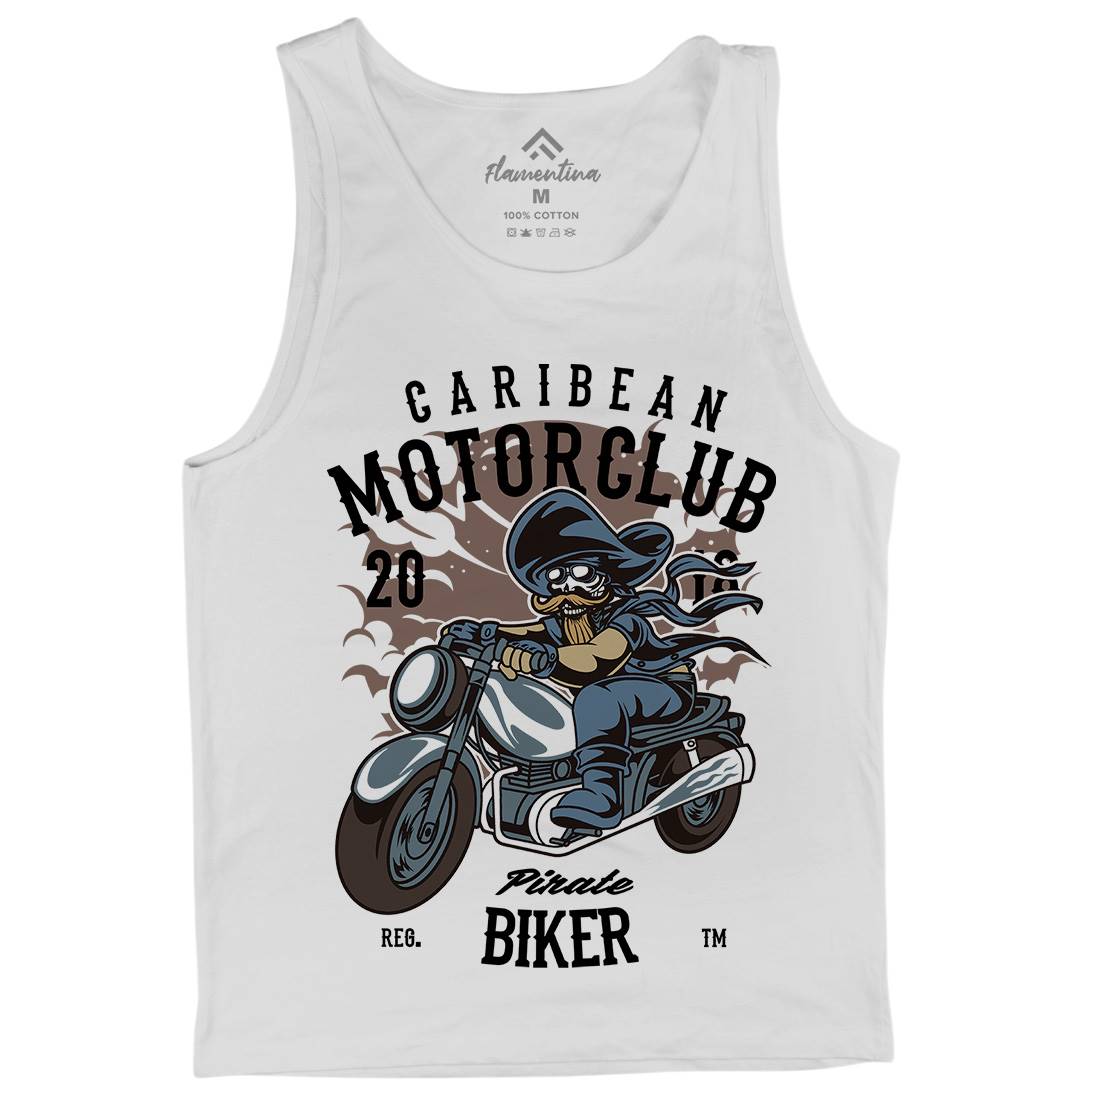 Pirate Biker Mens Tank Top Vest Motorcycles C415